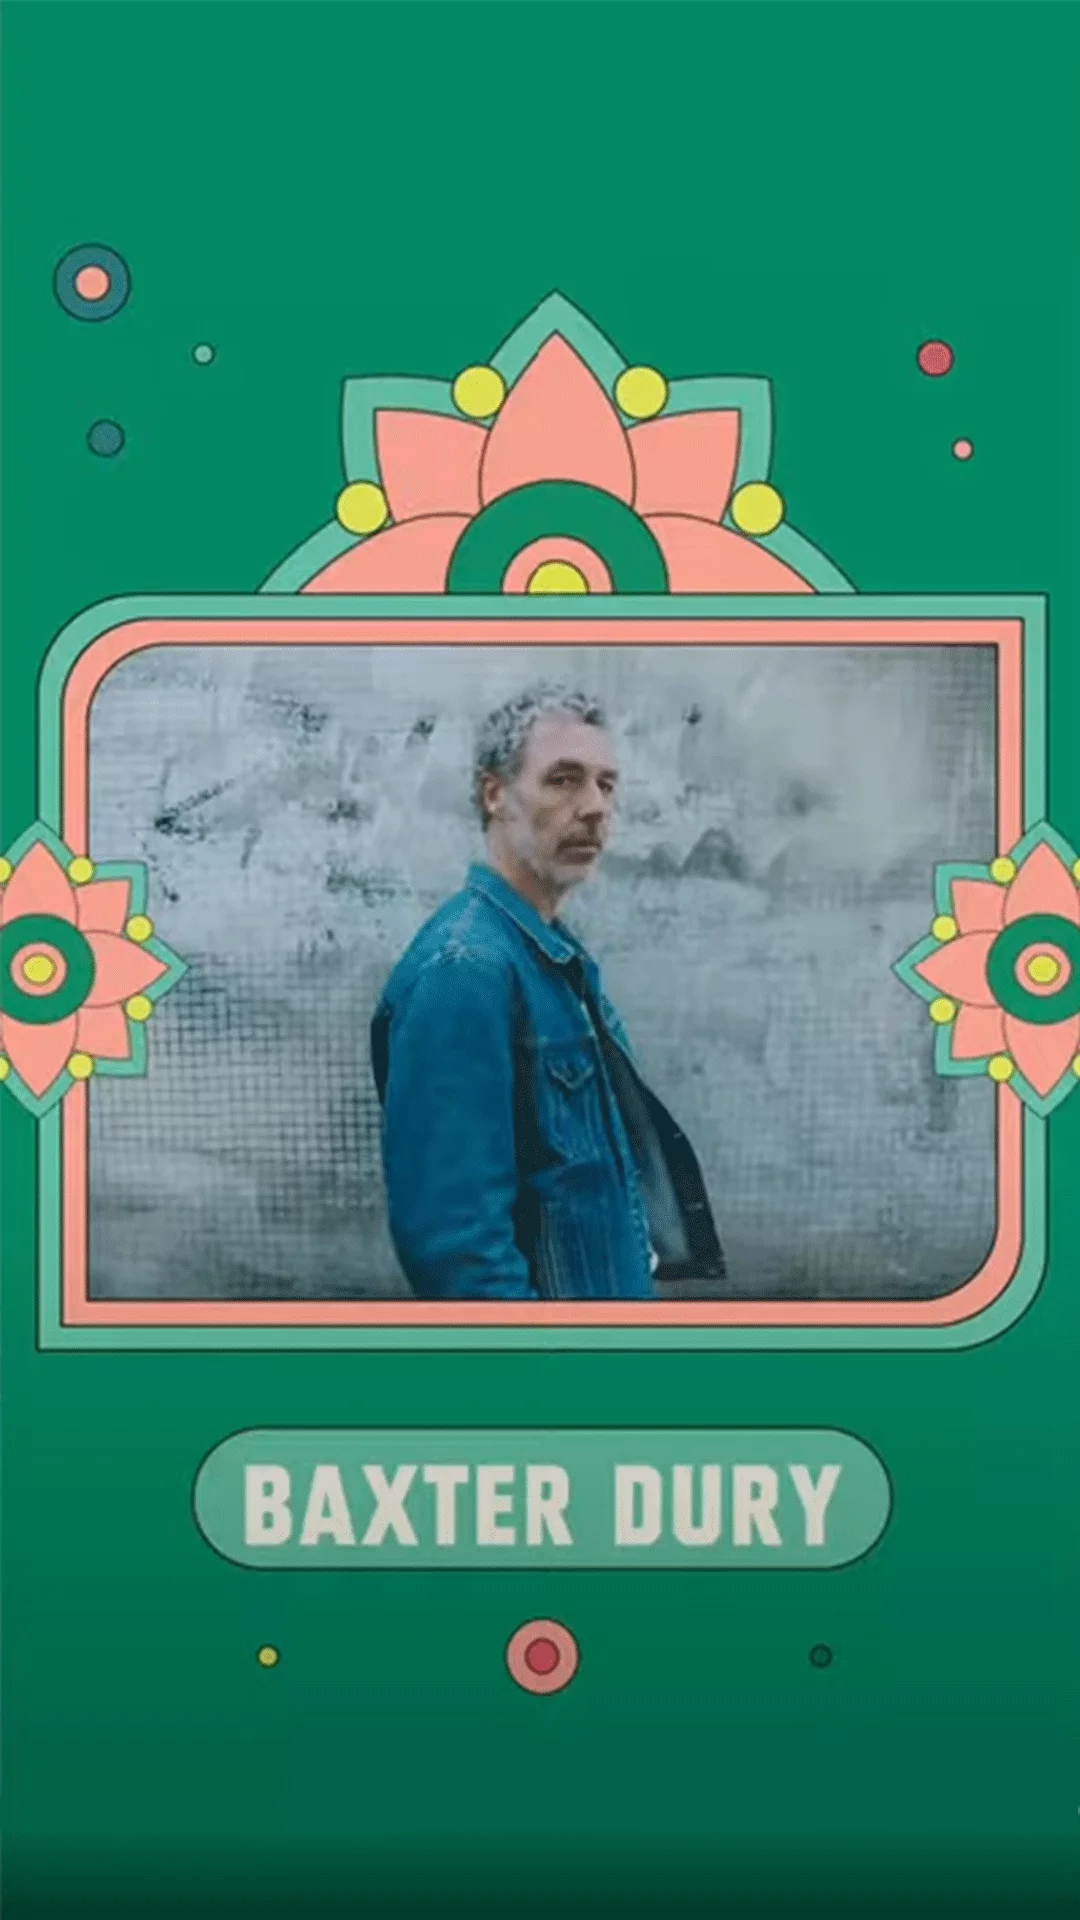 Découvre le Top 3 des duos de Baxter Dury selon Nico Prat !